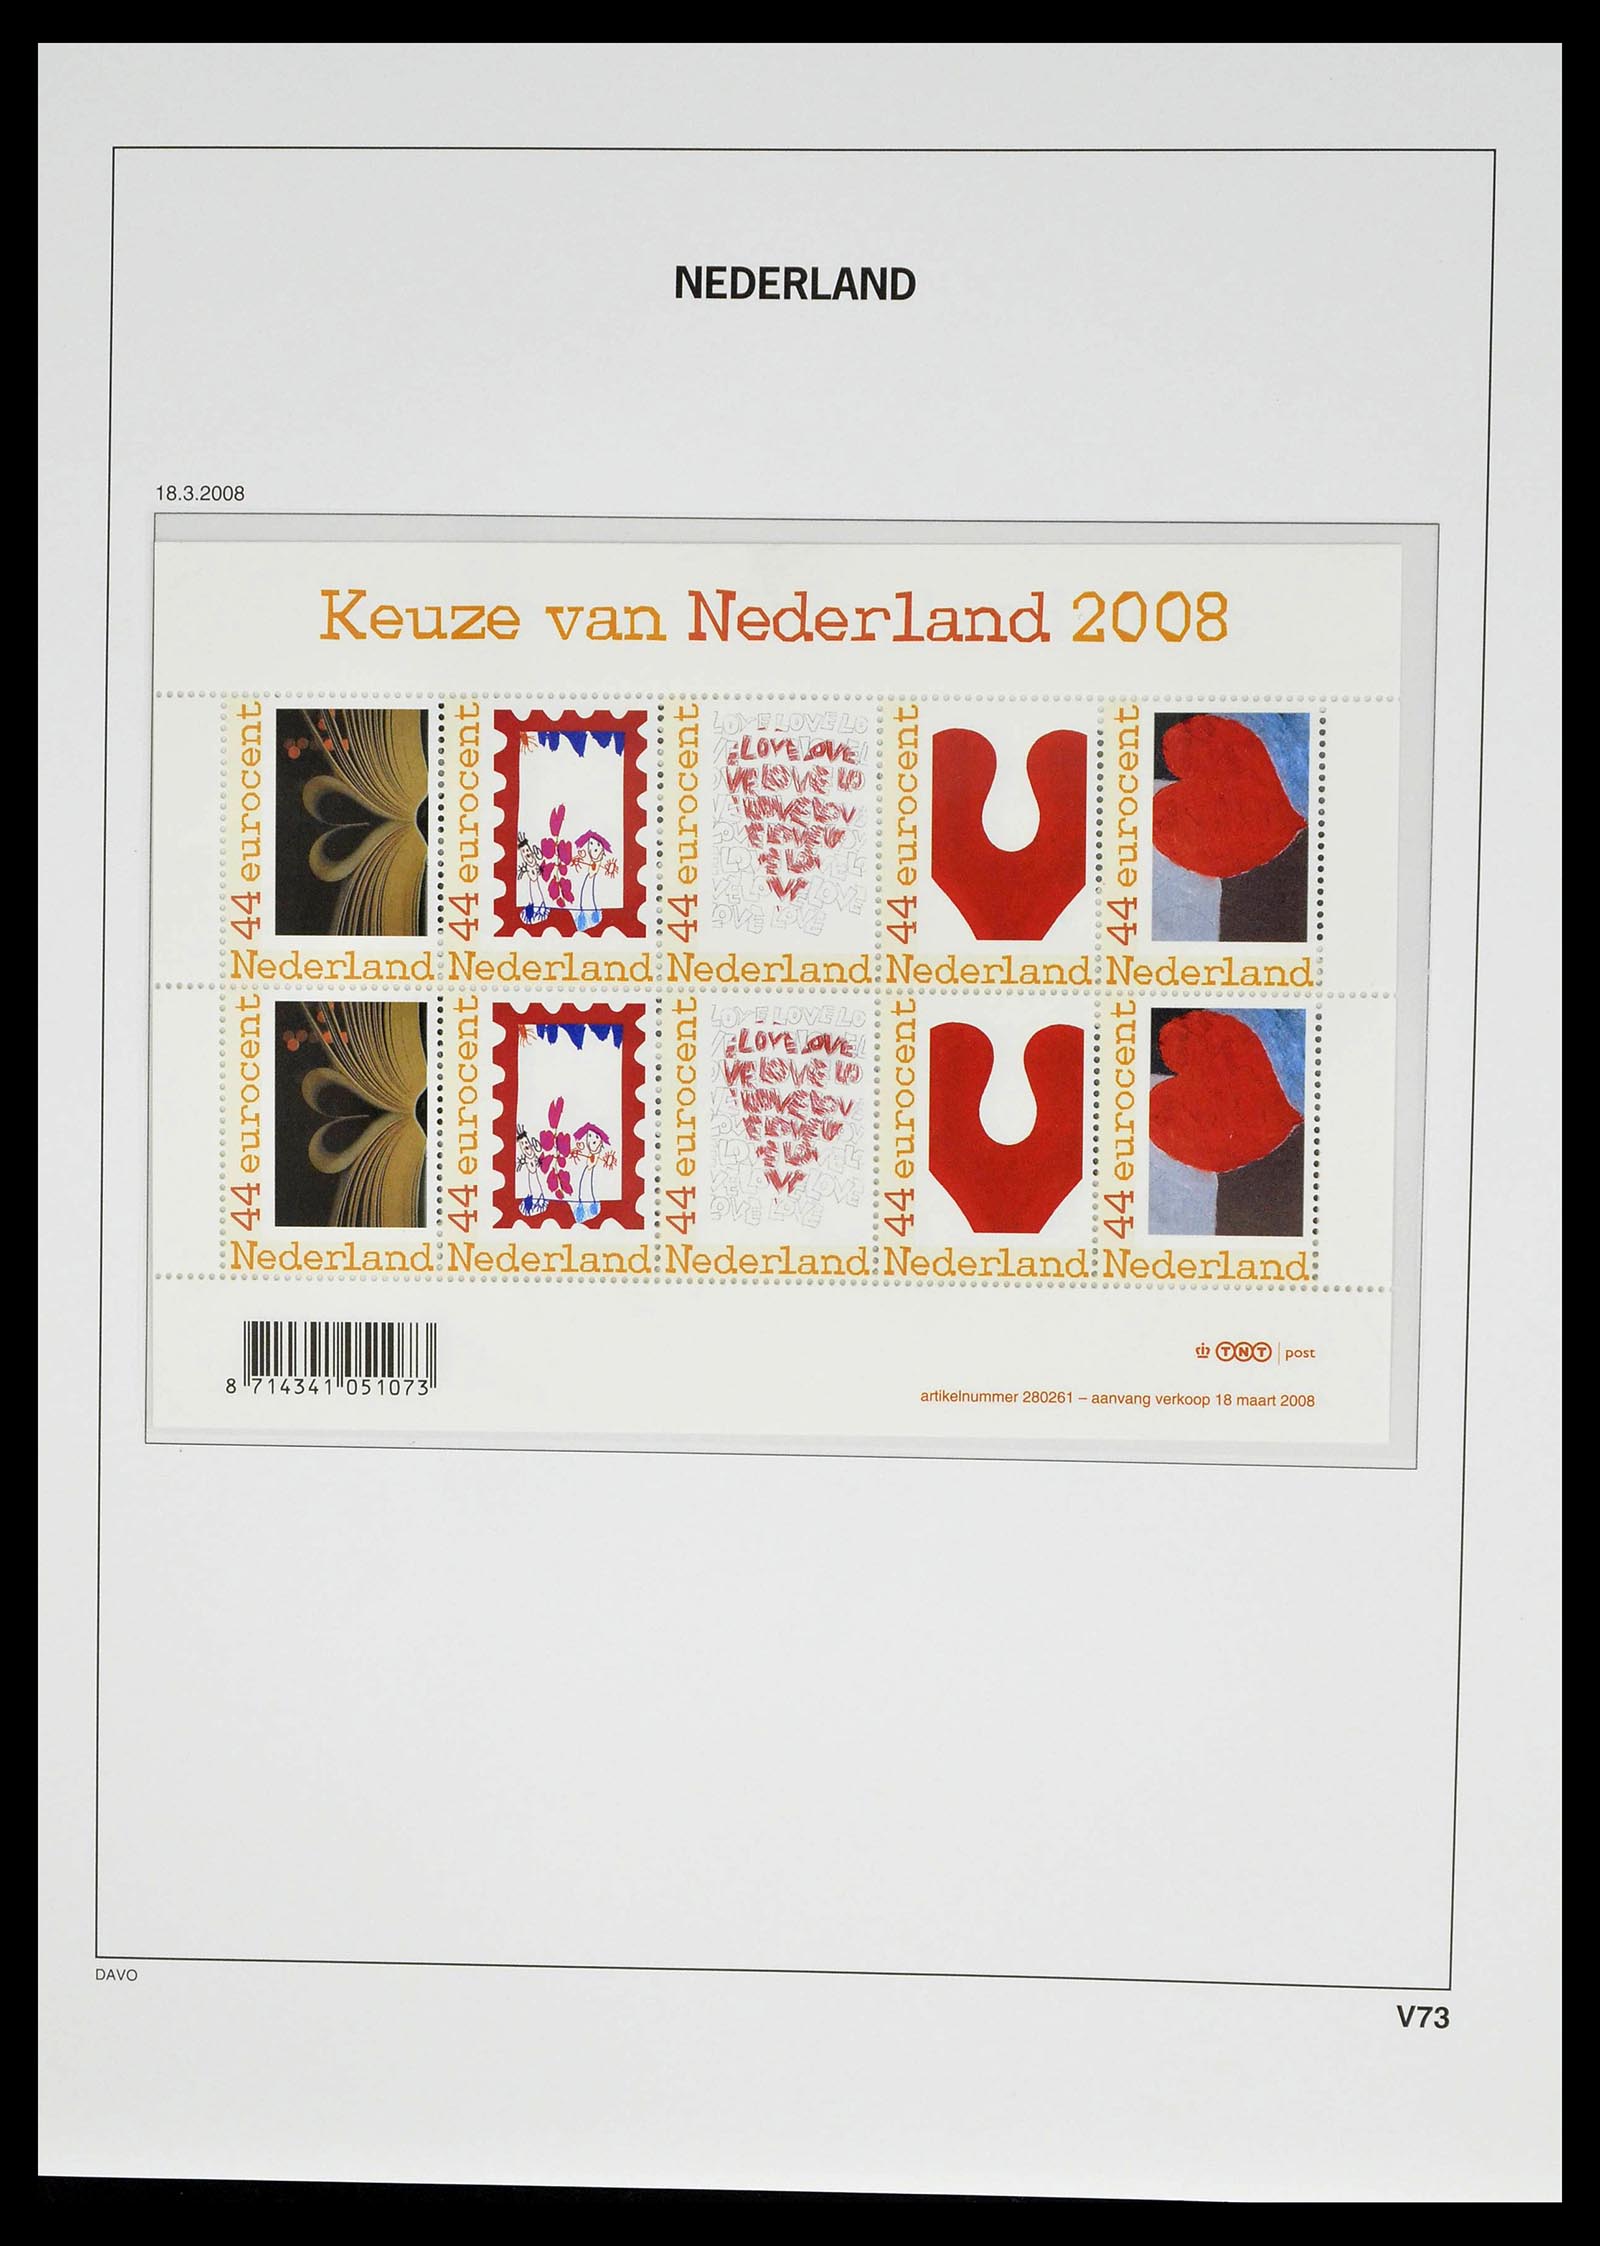 39134 0087 - Stamp collection 39134 Netherlands sheetlets 1992-2019!